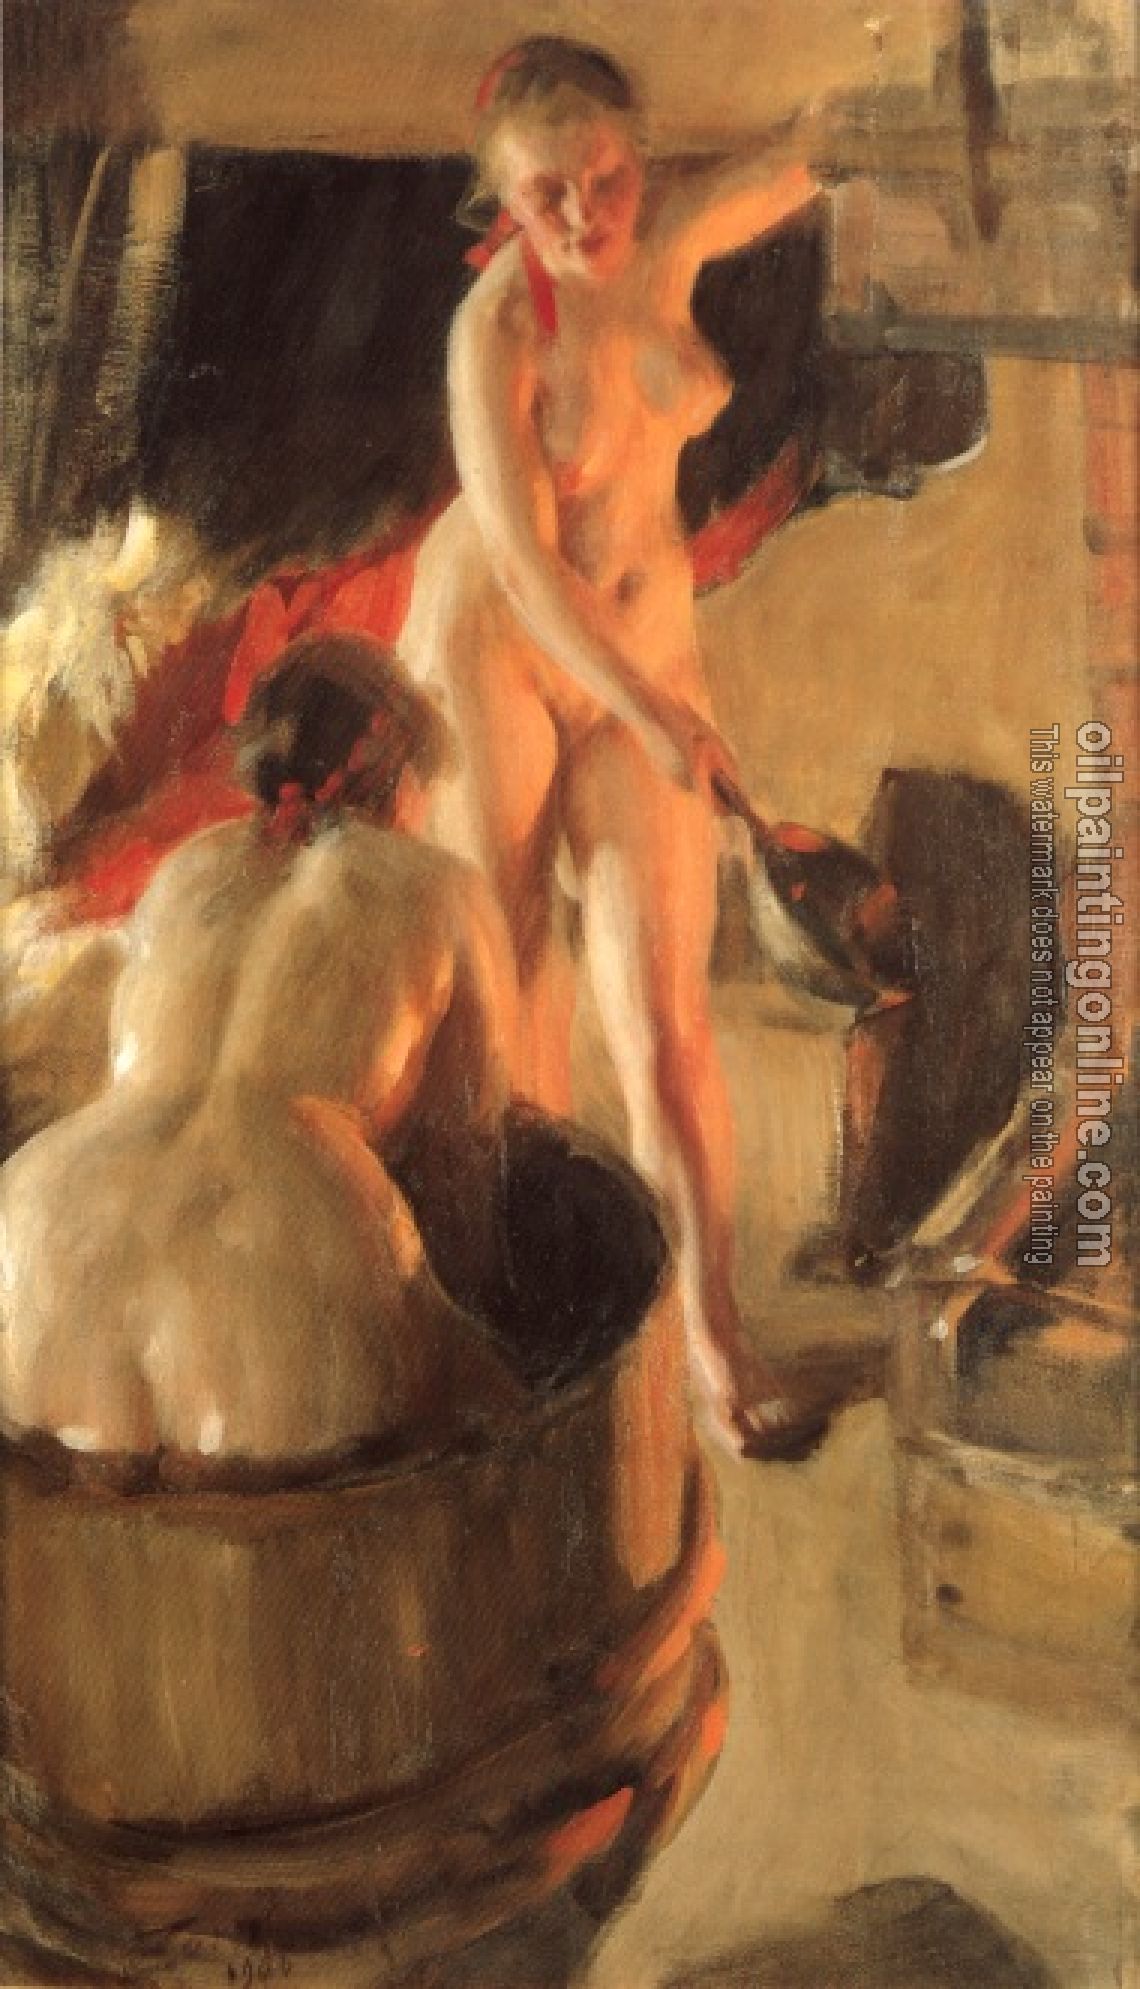 Zorn, Anders - Women bathing in the sauna